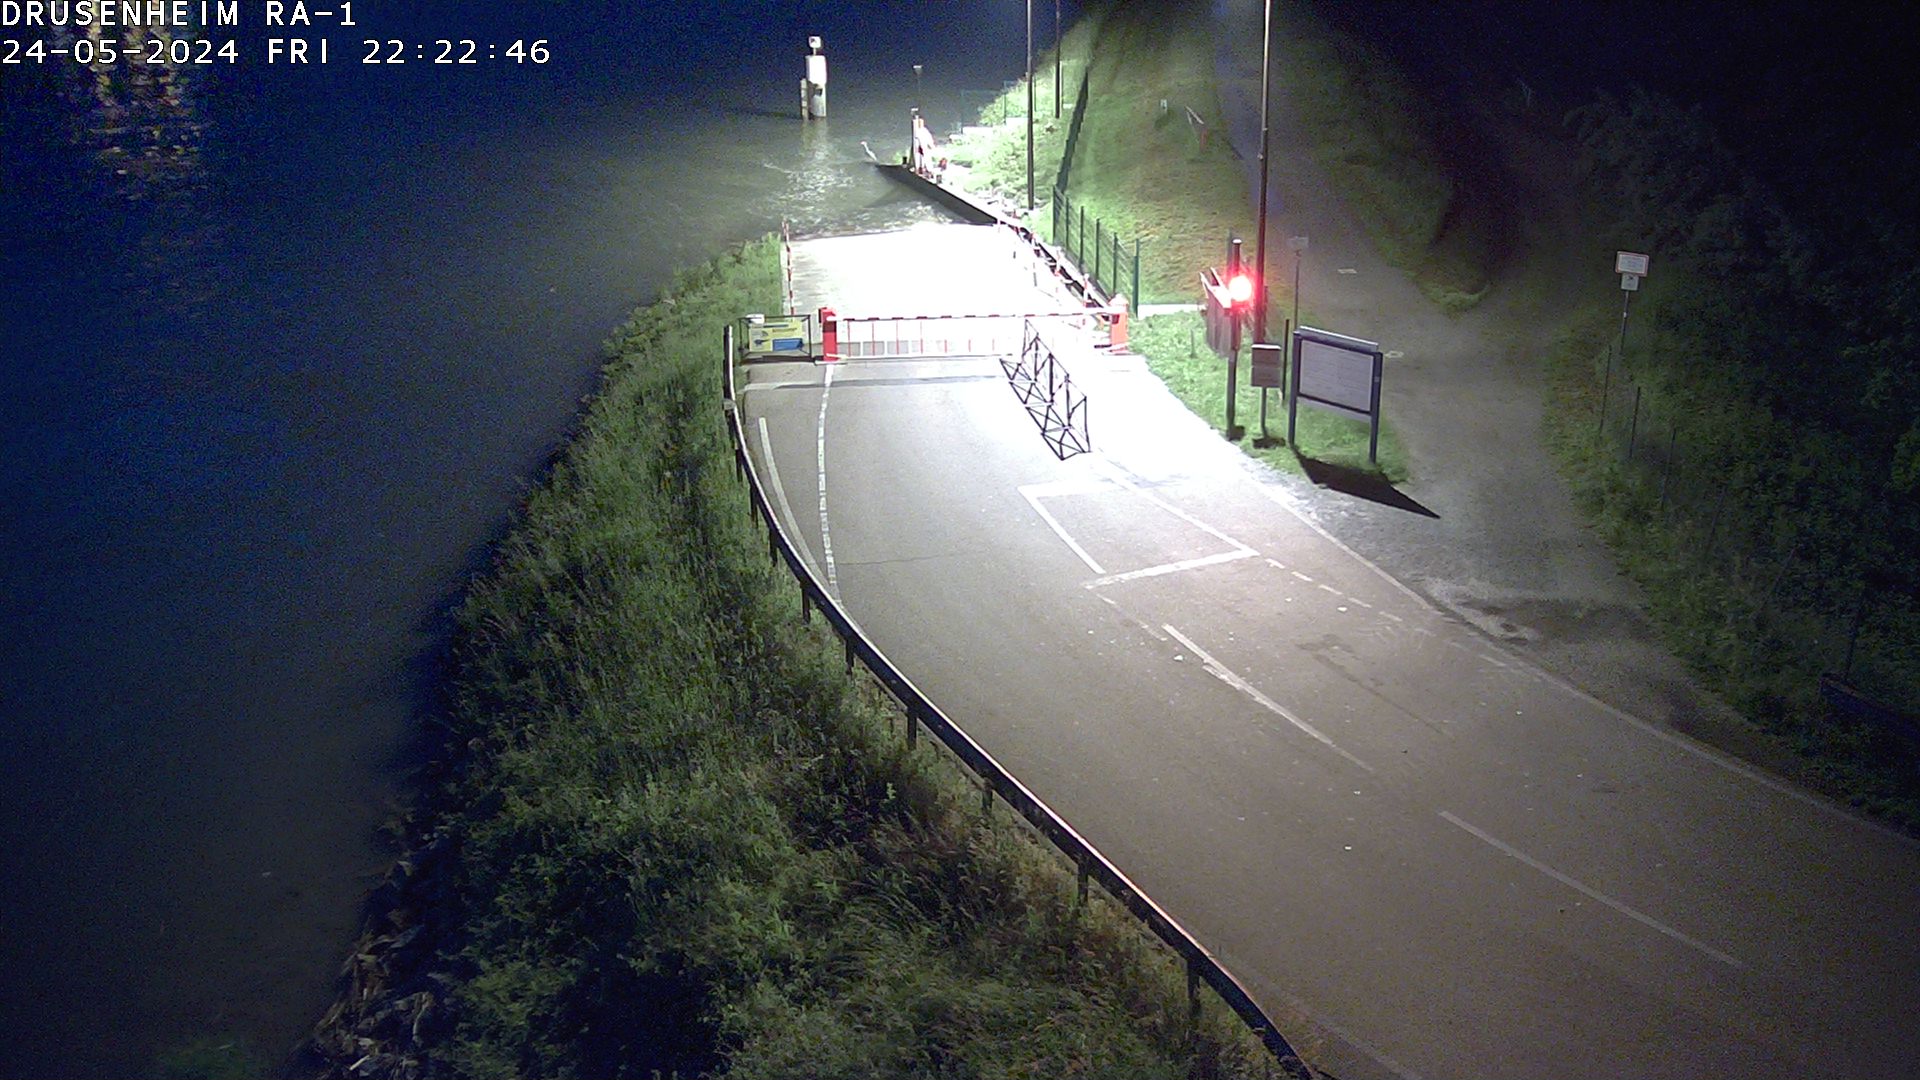 Webcam donnant sur la rampe d'embarquement du bac de Drusenheim